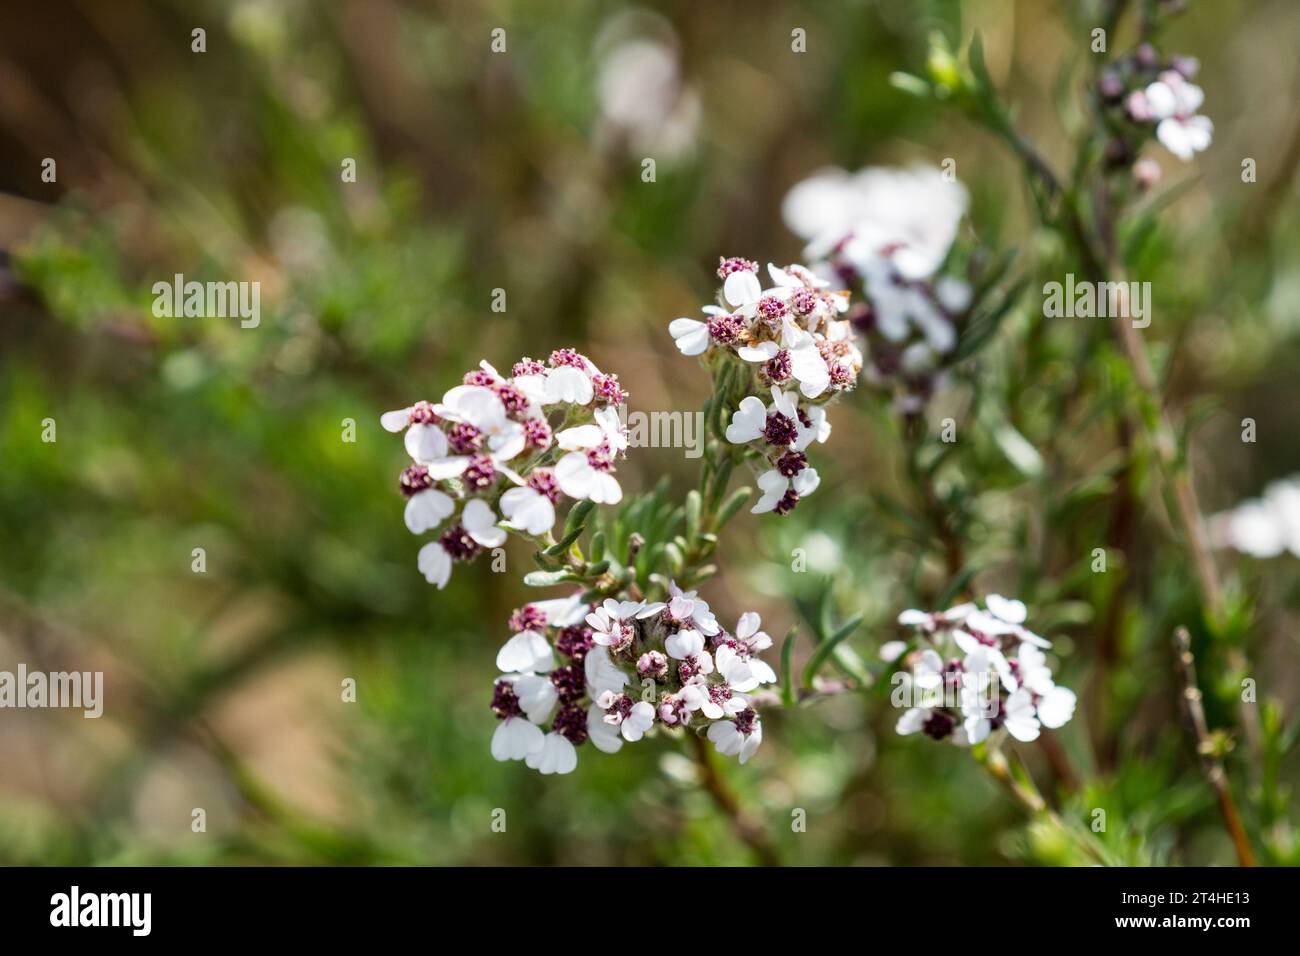 Eriocephalus africanus oder die Cape Snow Bush Blüten aus nächster Nähe an diesem harten, immergrünen Sträucher, der resistent gegen Dürre ist und in Südafrika endemisch ist Stockfoto